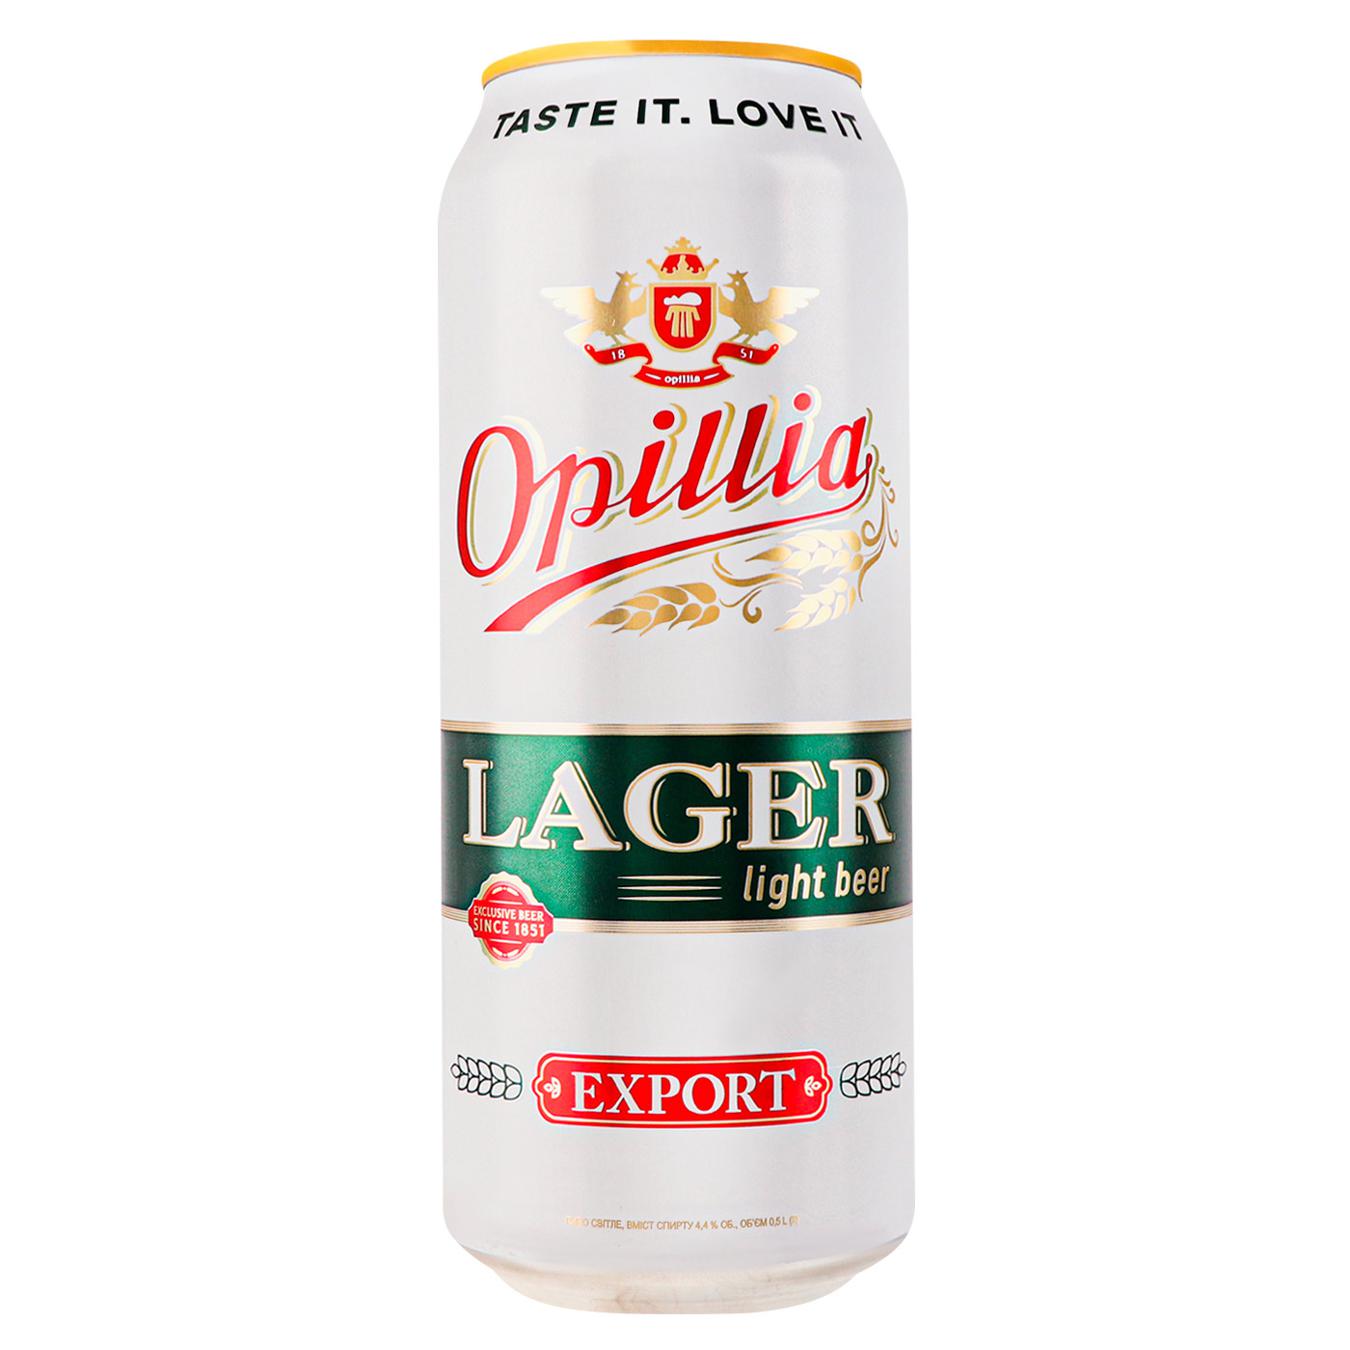 Пиво светлое Ополье Lager Export 4,4% 0,5л железная банка